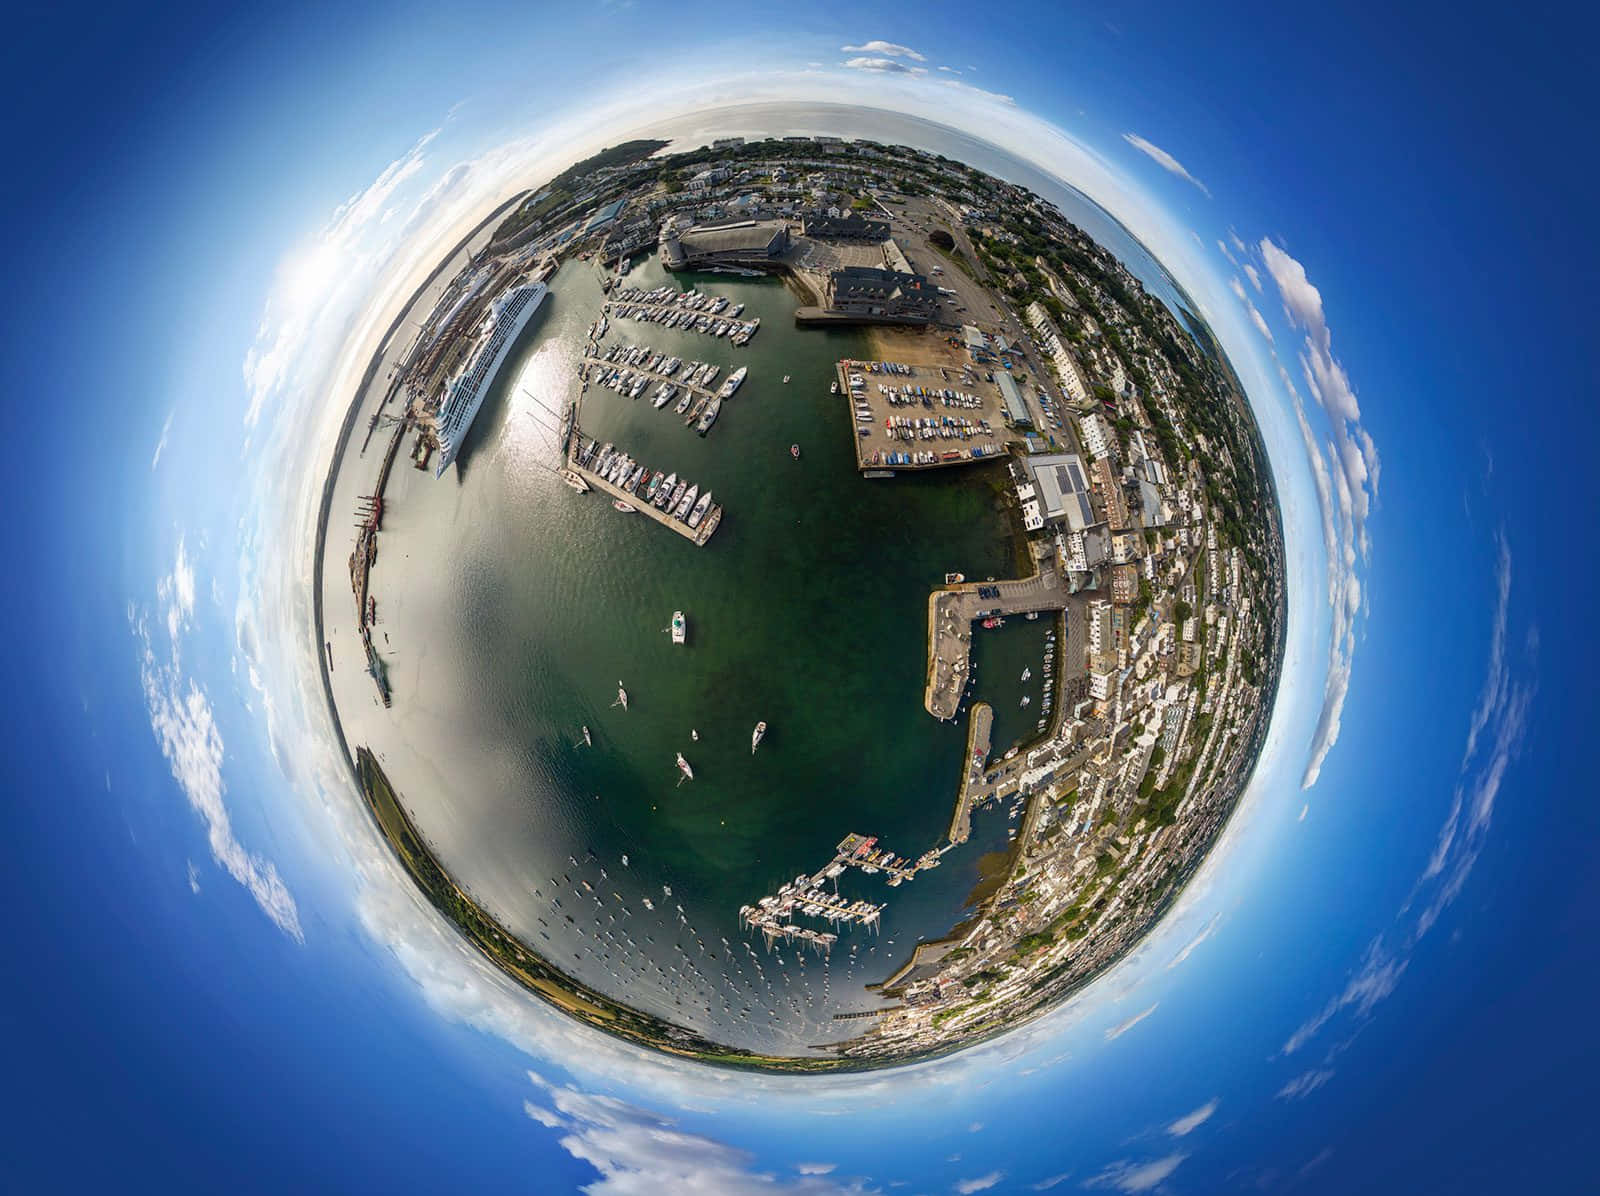 Imagendel Planeta Como Si Estuvieras Sumergido En El Océano, En 360 Grados.